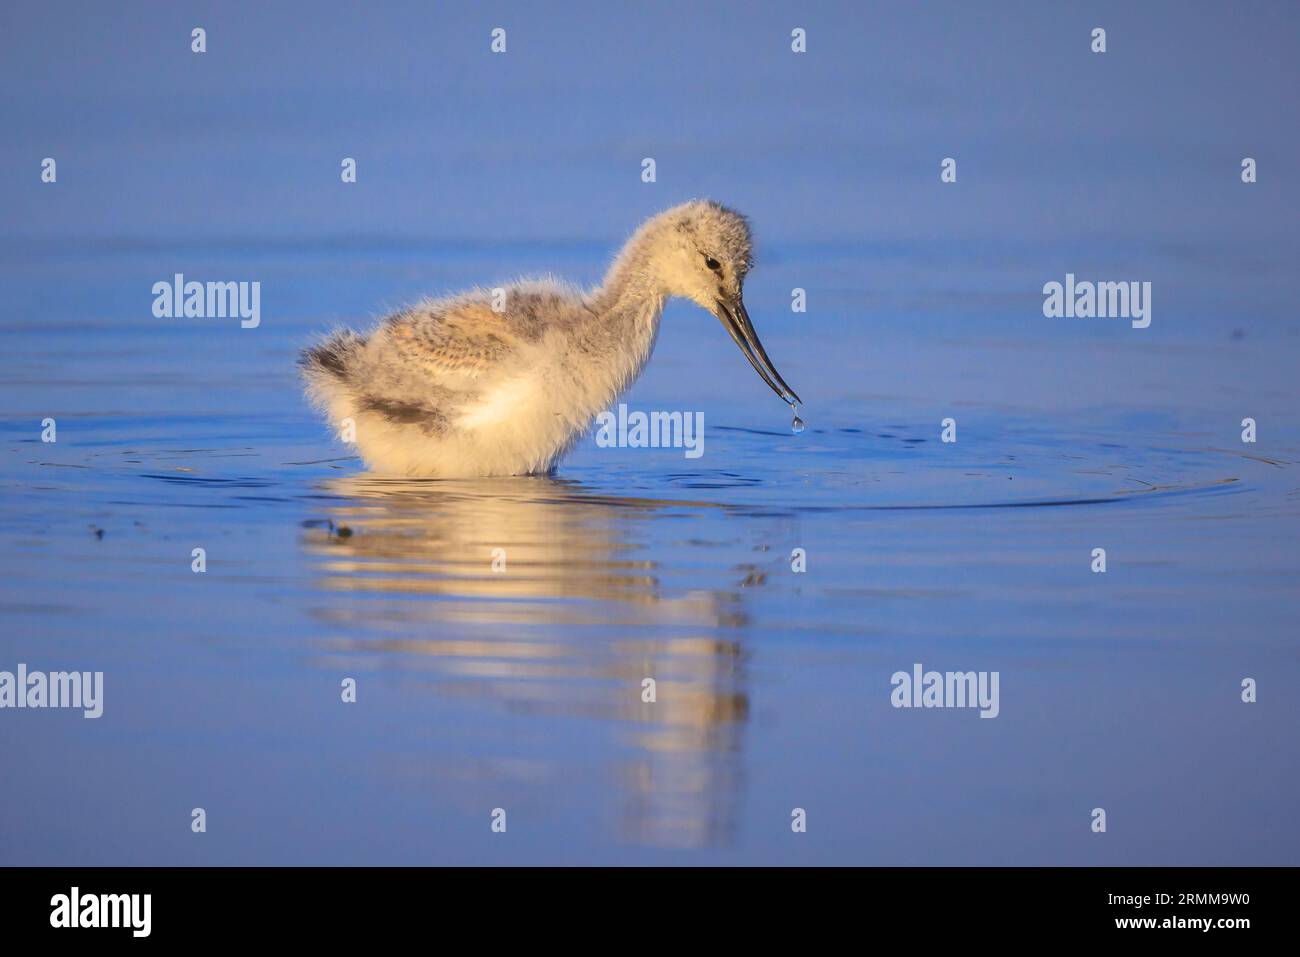 Pied Säbelschnäbler Recurvirostra avosetta Wader vogel küken Nahrungssuche im Wasser Stockfoto